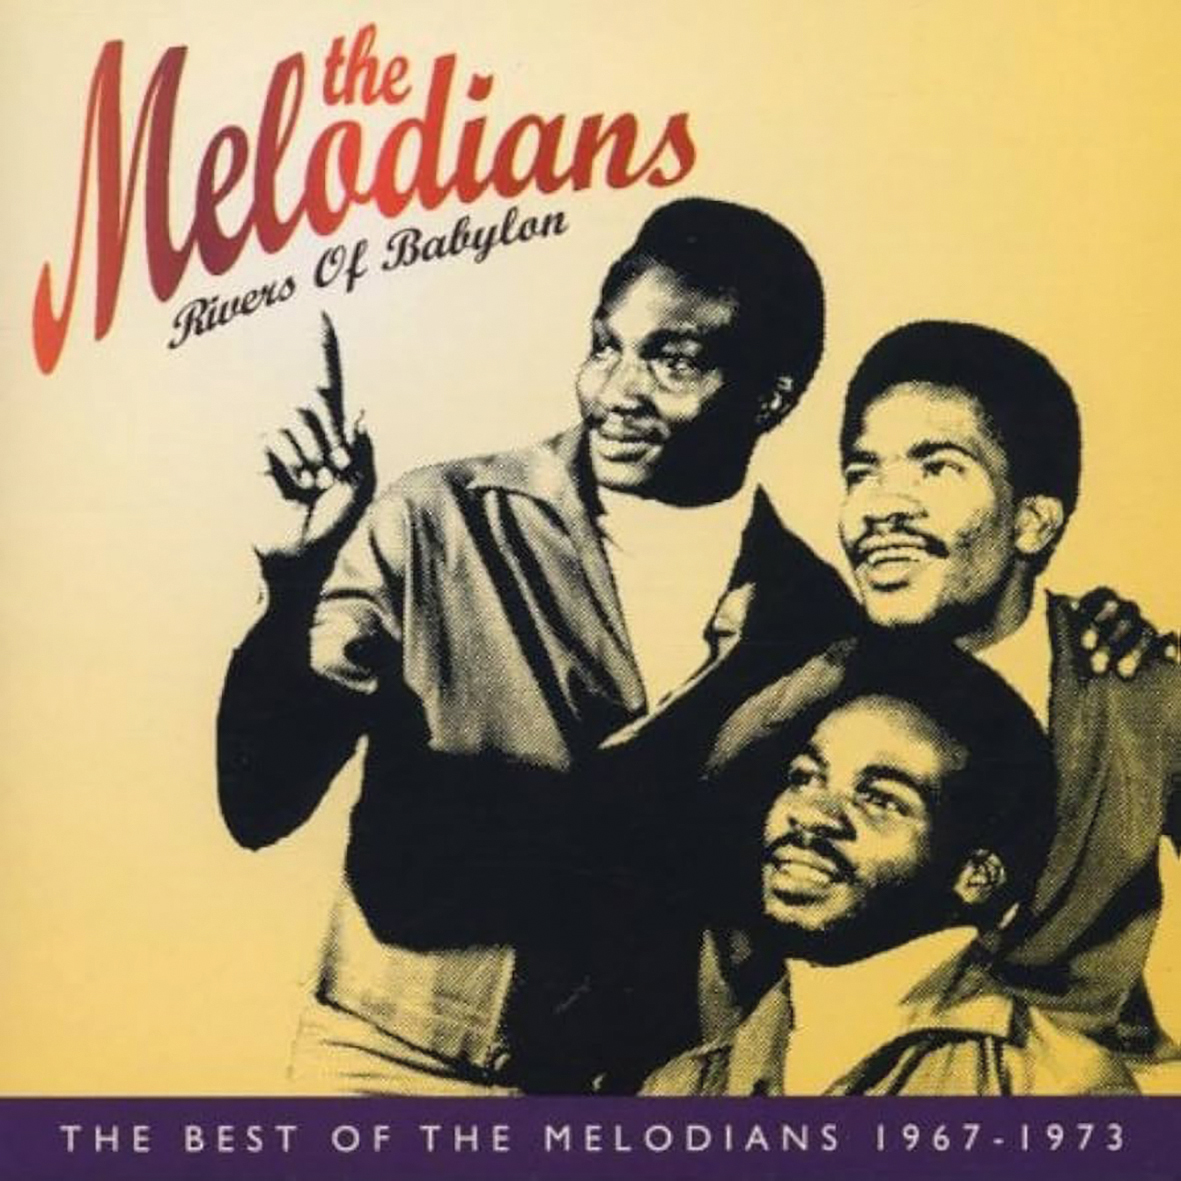 Voor de Jamaicaanse reggaegroep ‘The Melodians’ verwees ‘Rivers or Babylon’ naar het slavernijverleden van hun volk.